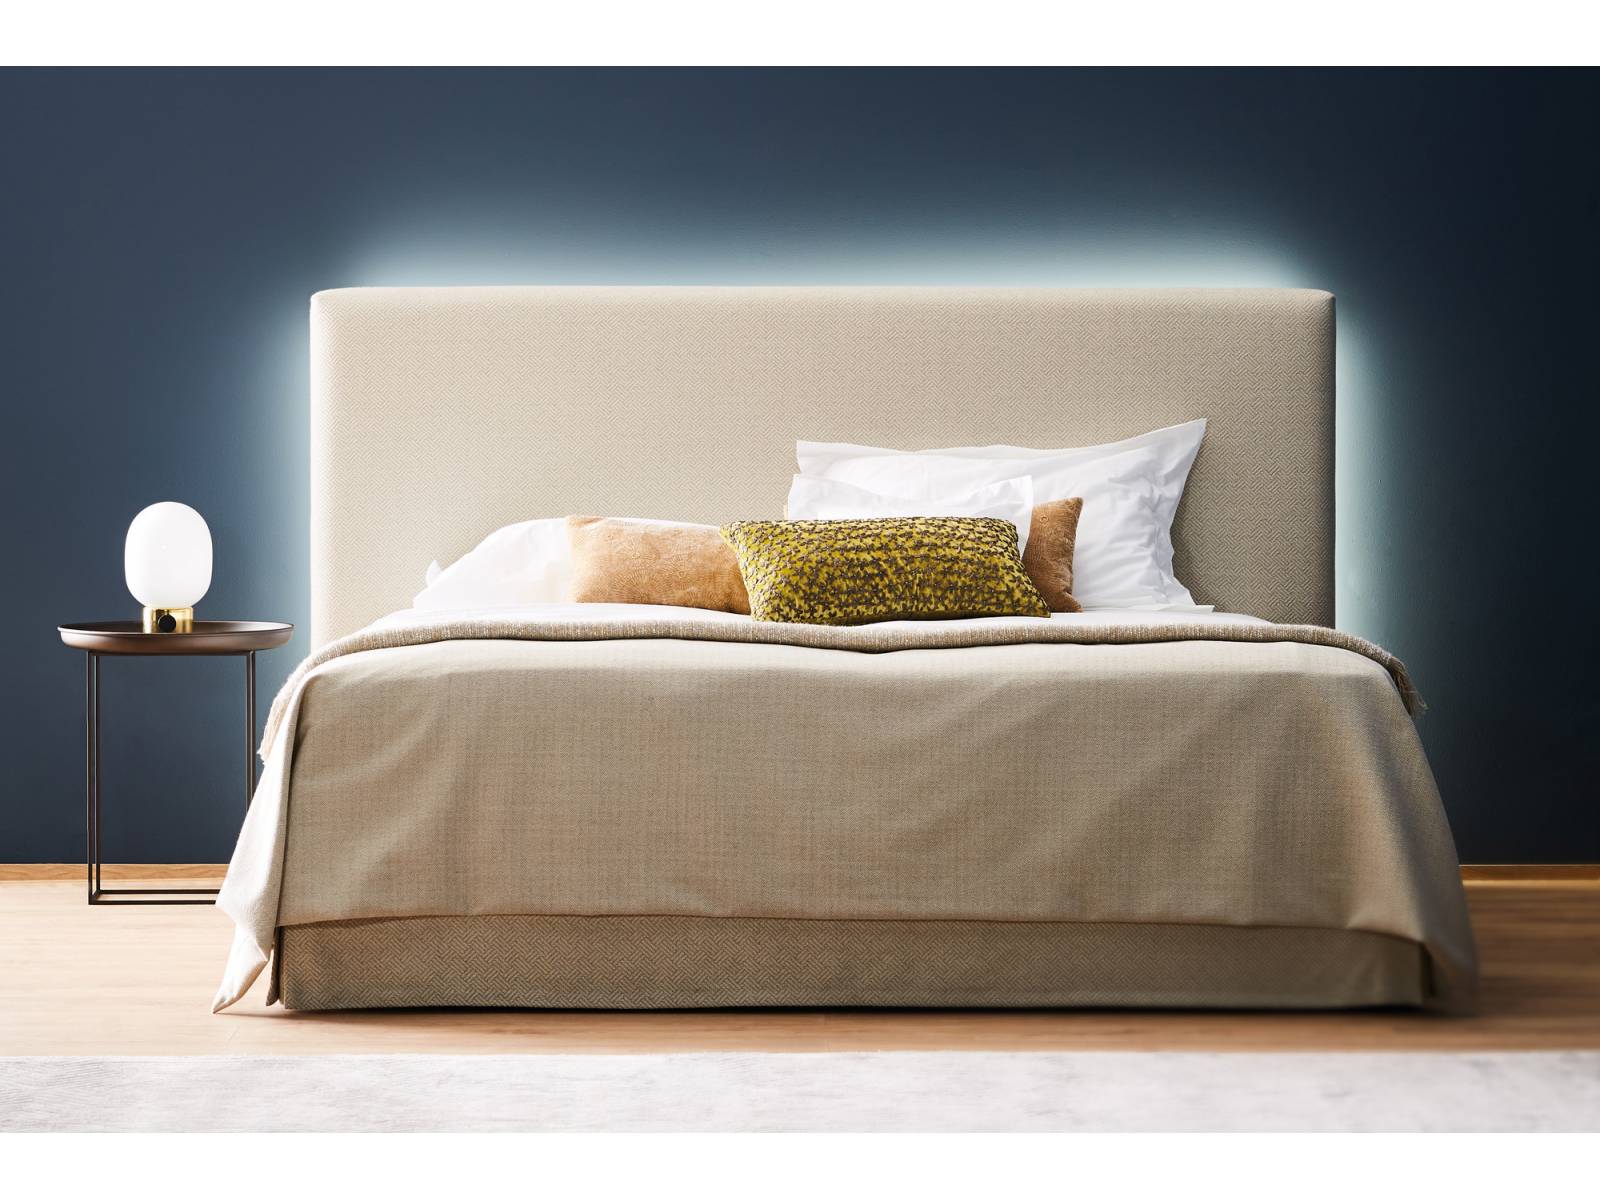 Der deutsche Bettenhersteller überraschte mit stimmungsvollem Licht hinter dem Kopfteil des Bettes «Daylight». Via App gesteuert, sorgt es jederzeit für die optimale Beleuchtung im Schlafzimmer. Schramm.